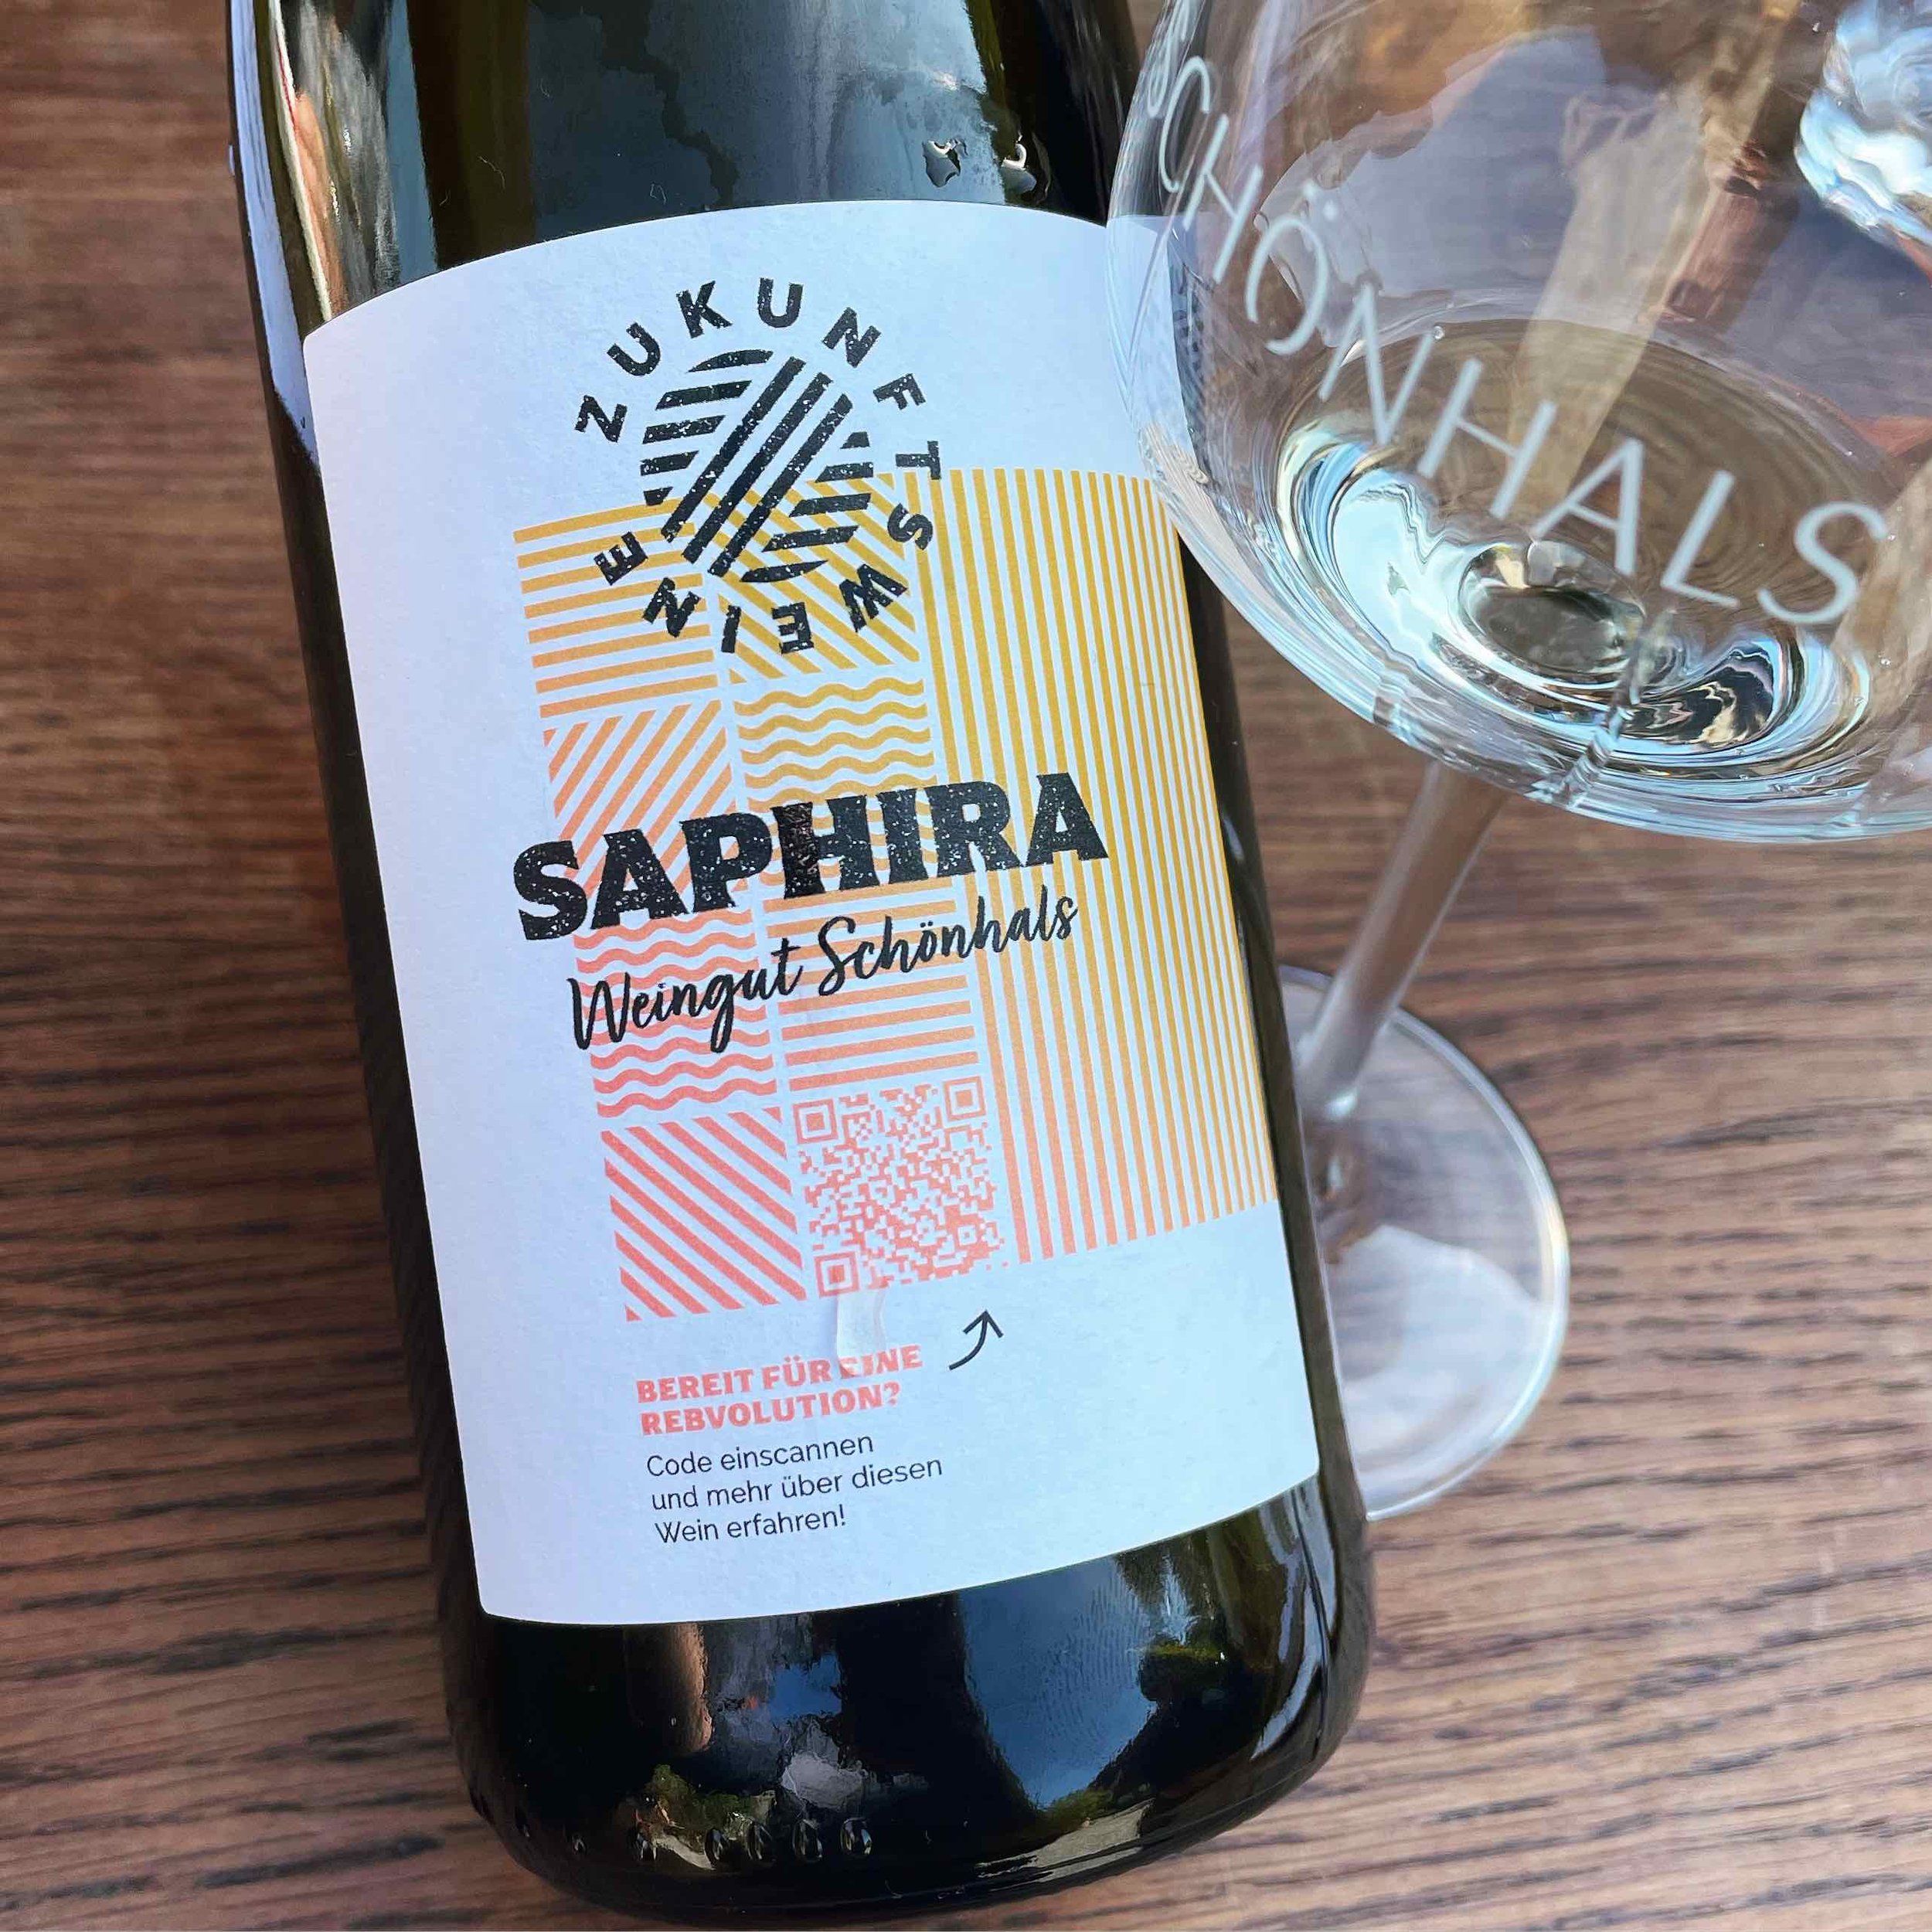 Weingut Schönhals Saphira 2020 Zukunftsweine Flaskevis (C) Thomas Bohl.jpg